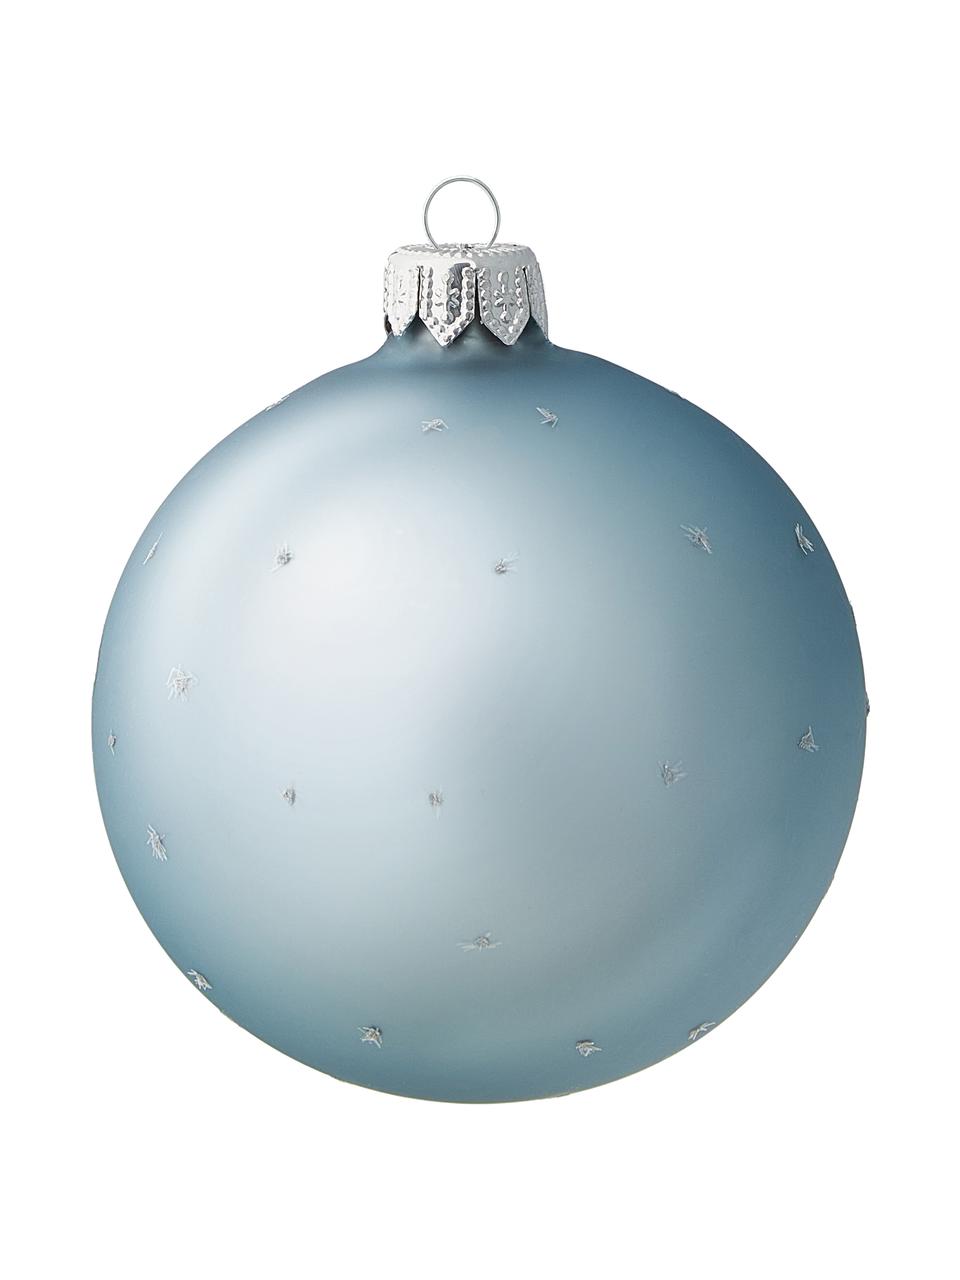 Mondgeblazen kerstballen Snow, 6 stuks, Glas, Blauw, wit, zilverkleurig, Ø 8 cm